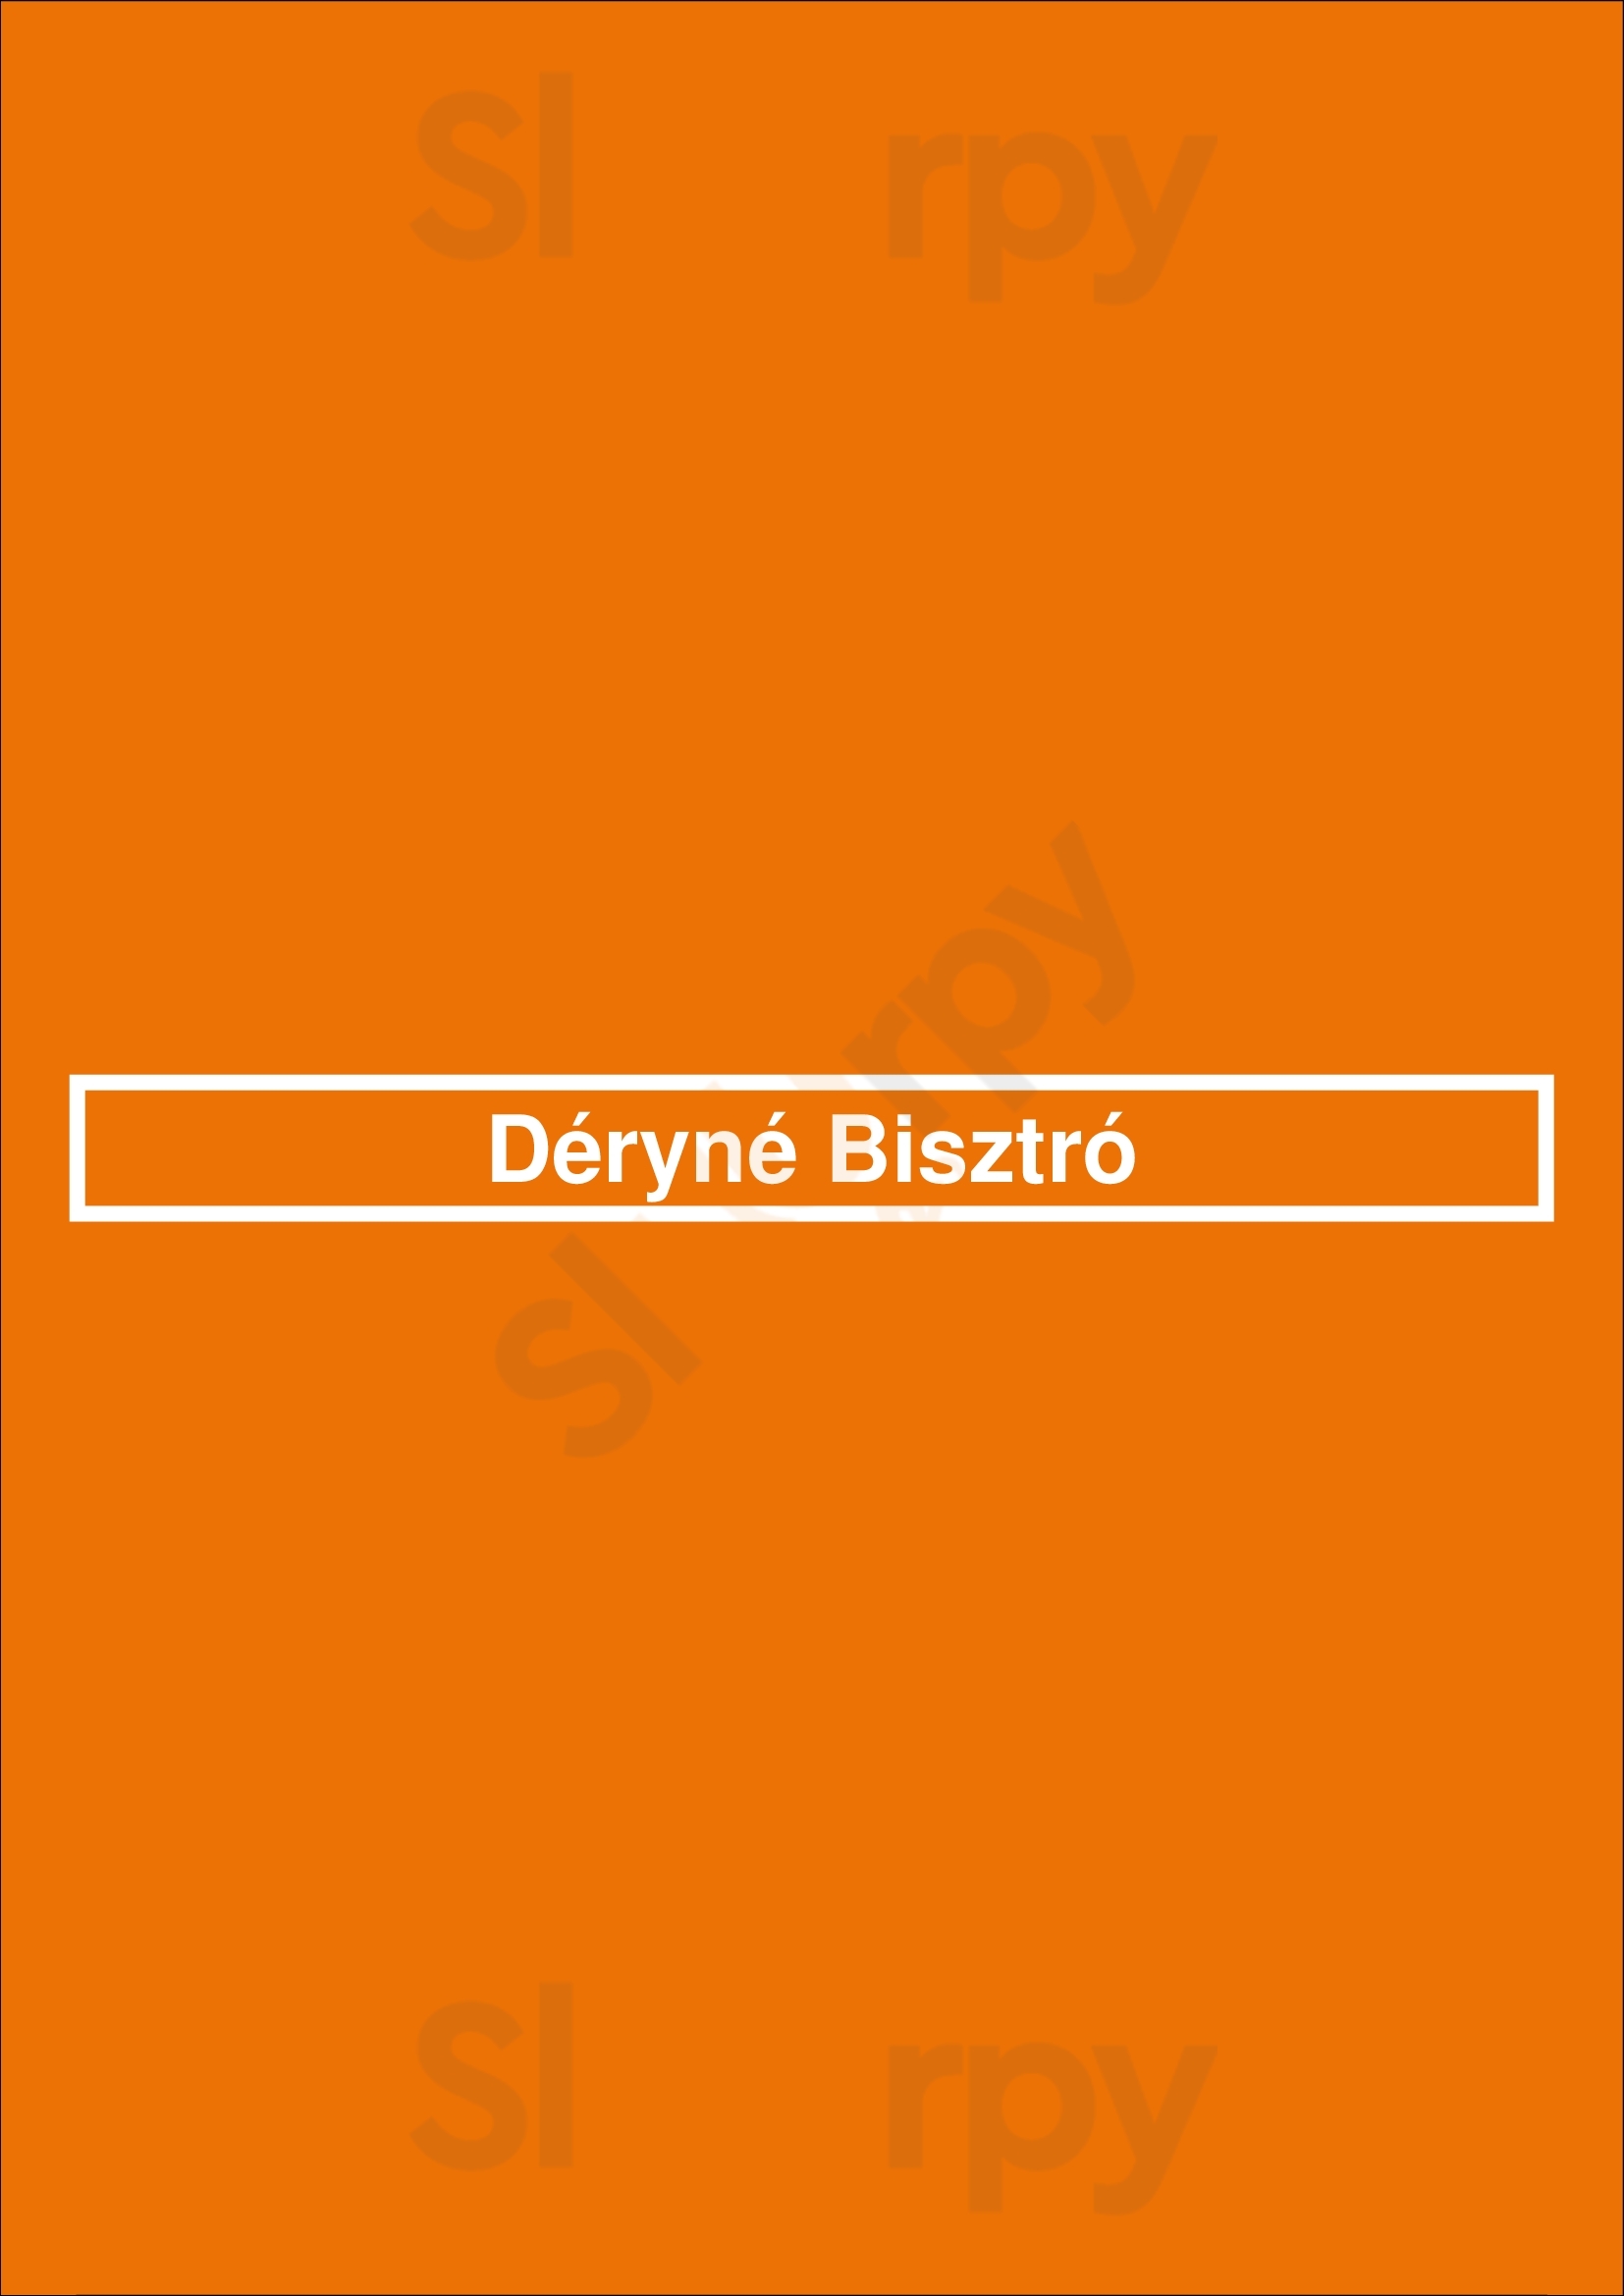 Déryné Bisztró Budapest Menu - 1